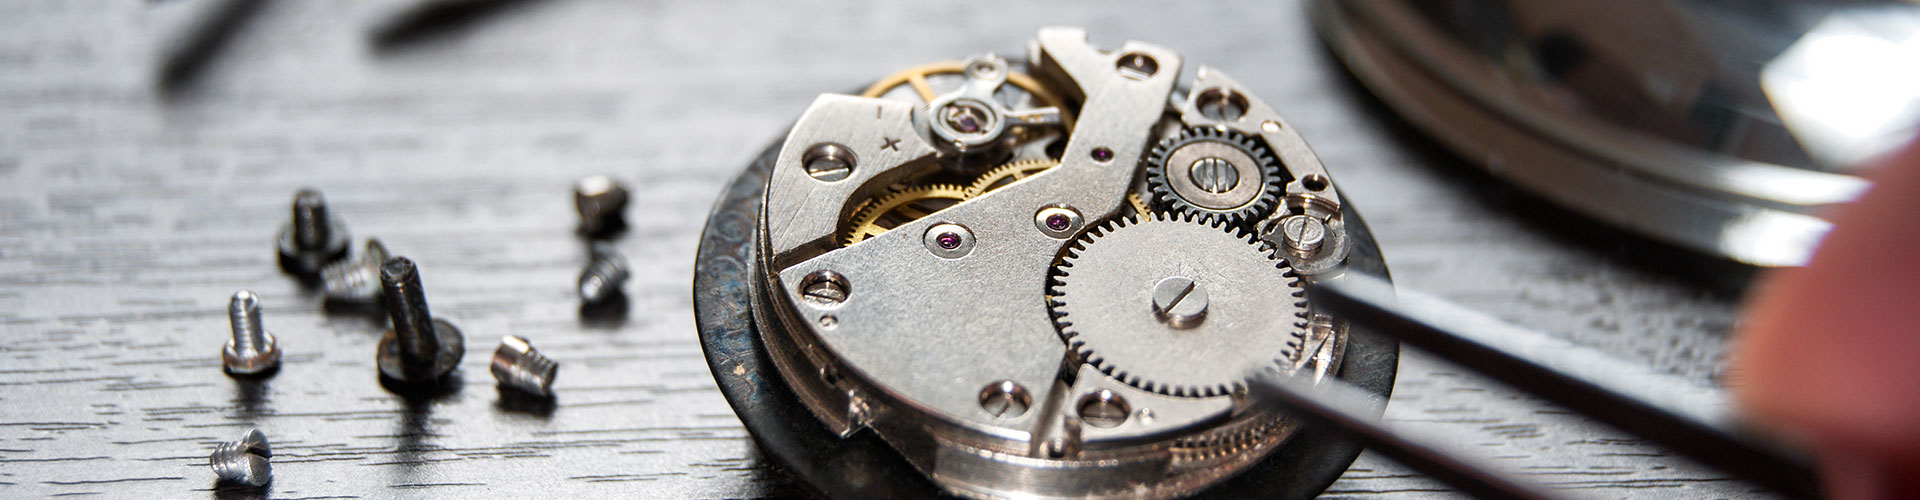 watch repair vintage